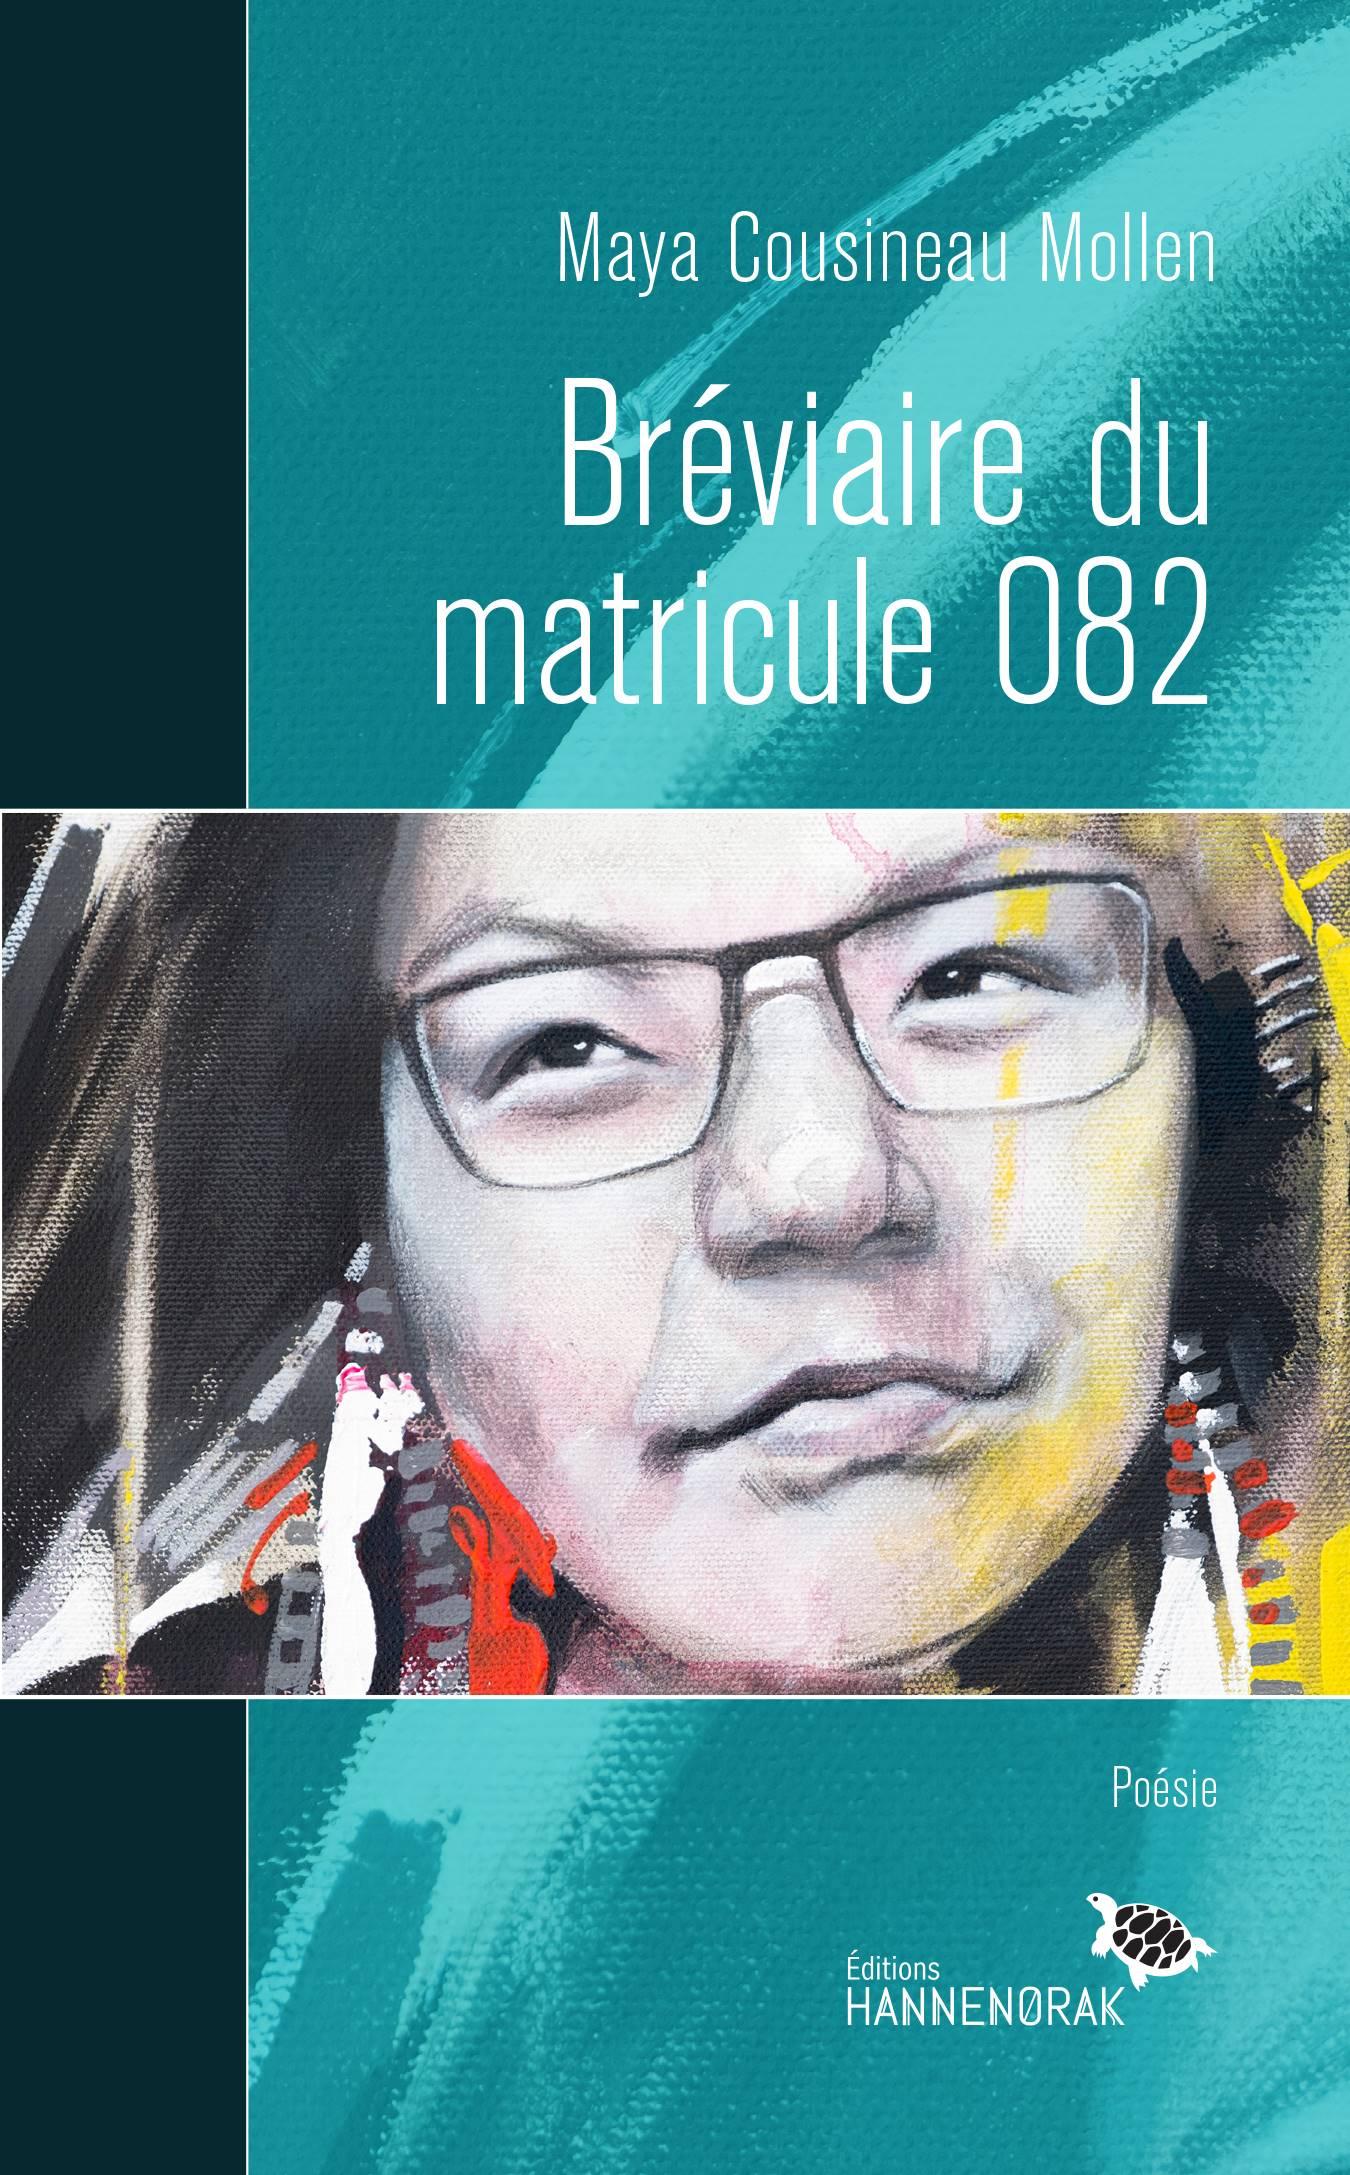 Copertina di "Bréviaire du matricule 082" di Maya Cousineau Mollen